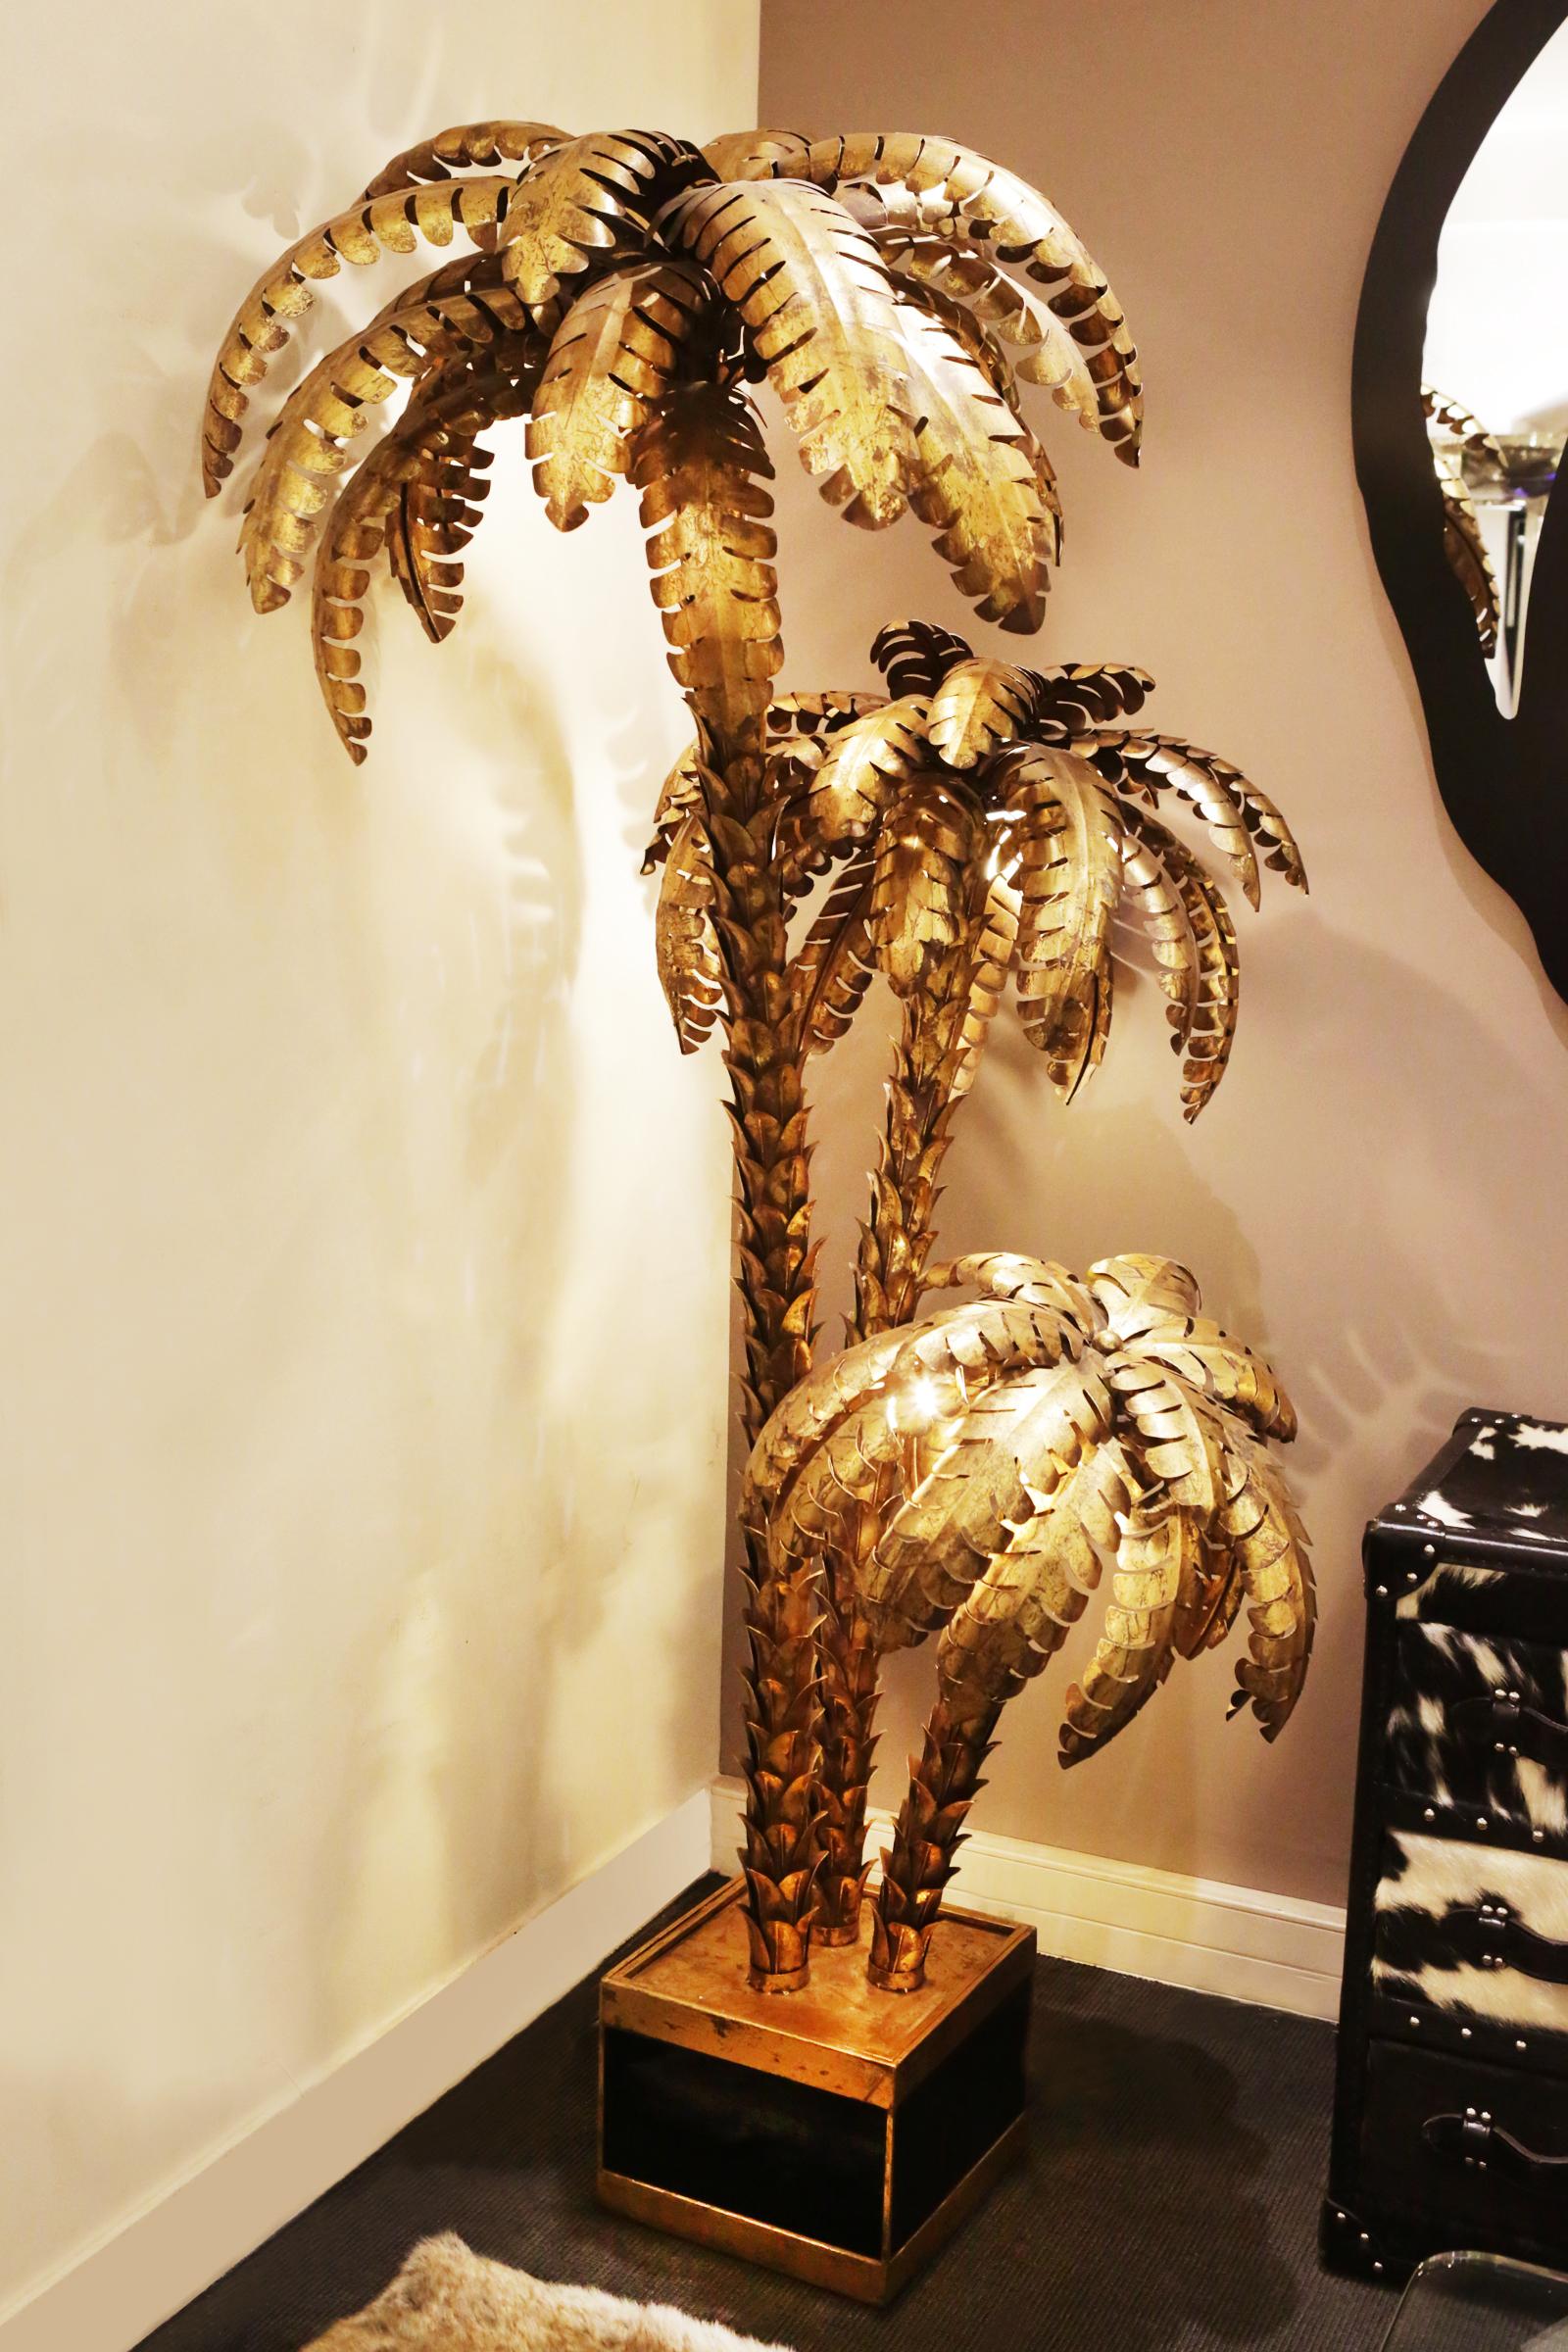 Stehlampe vergoldet palmer dreifach mit struktur
aus Stahl in Goldausführung. Schwarz lackierter Sockel. Drei Äste
palmer. Vintage-Stil, hergestellt in Frankreich.
Abmessungen des Sockels: L 33 x T 33 x H 25cm.